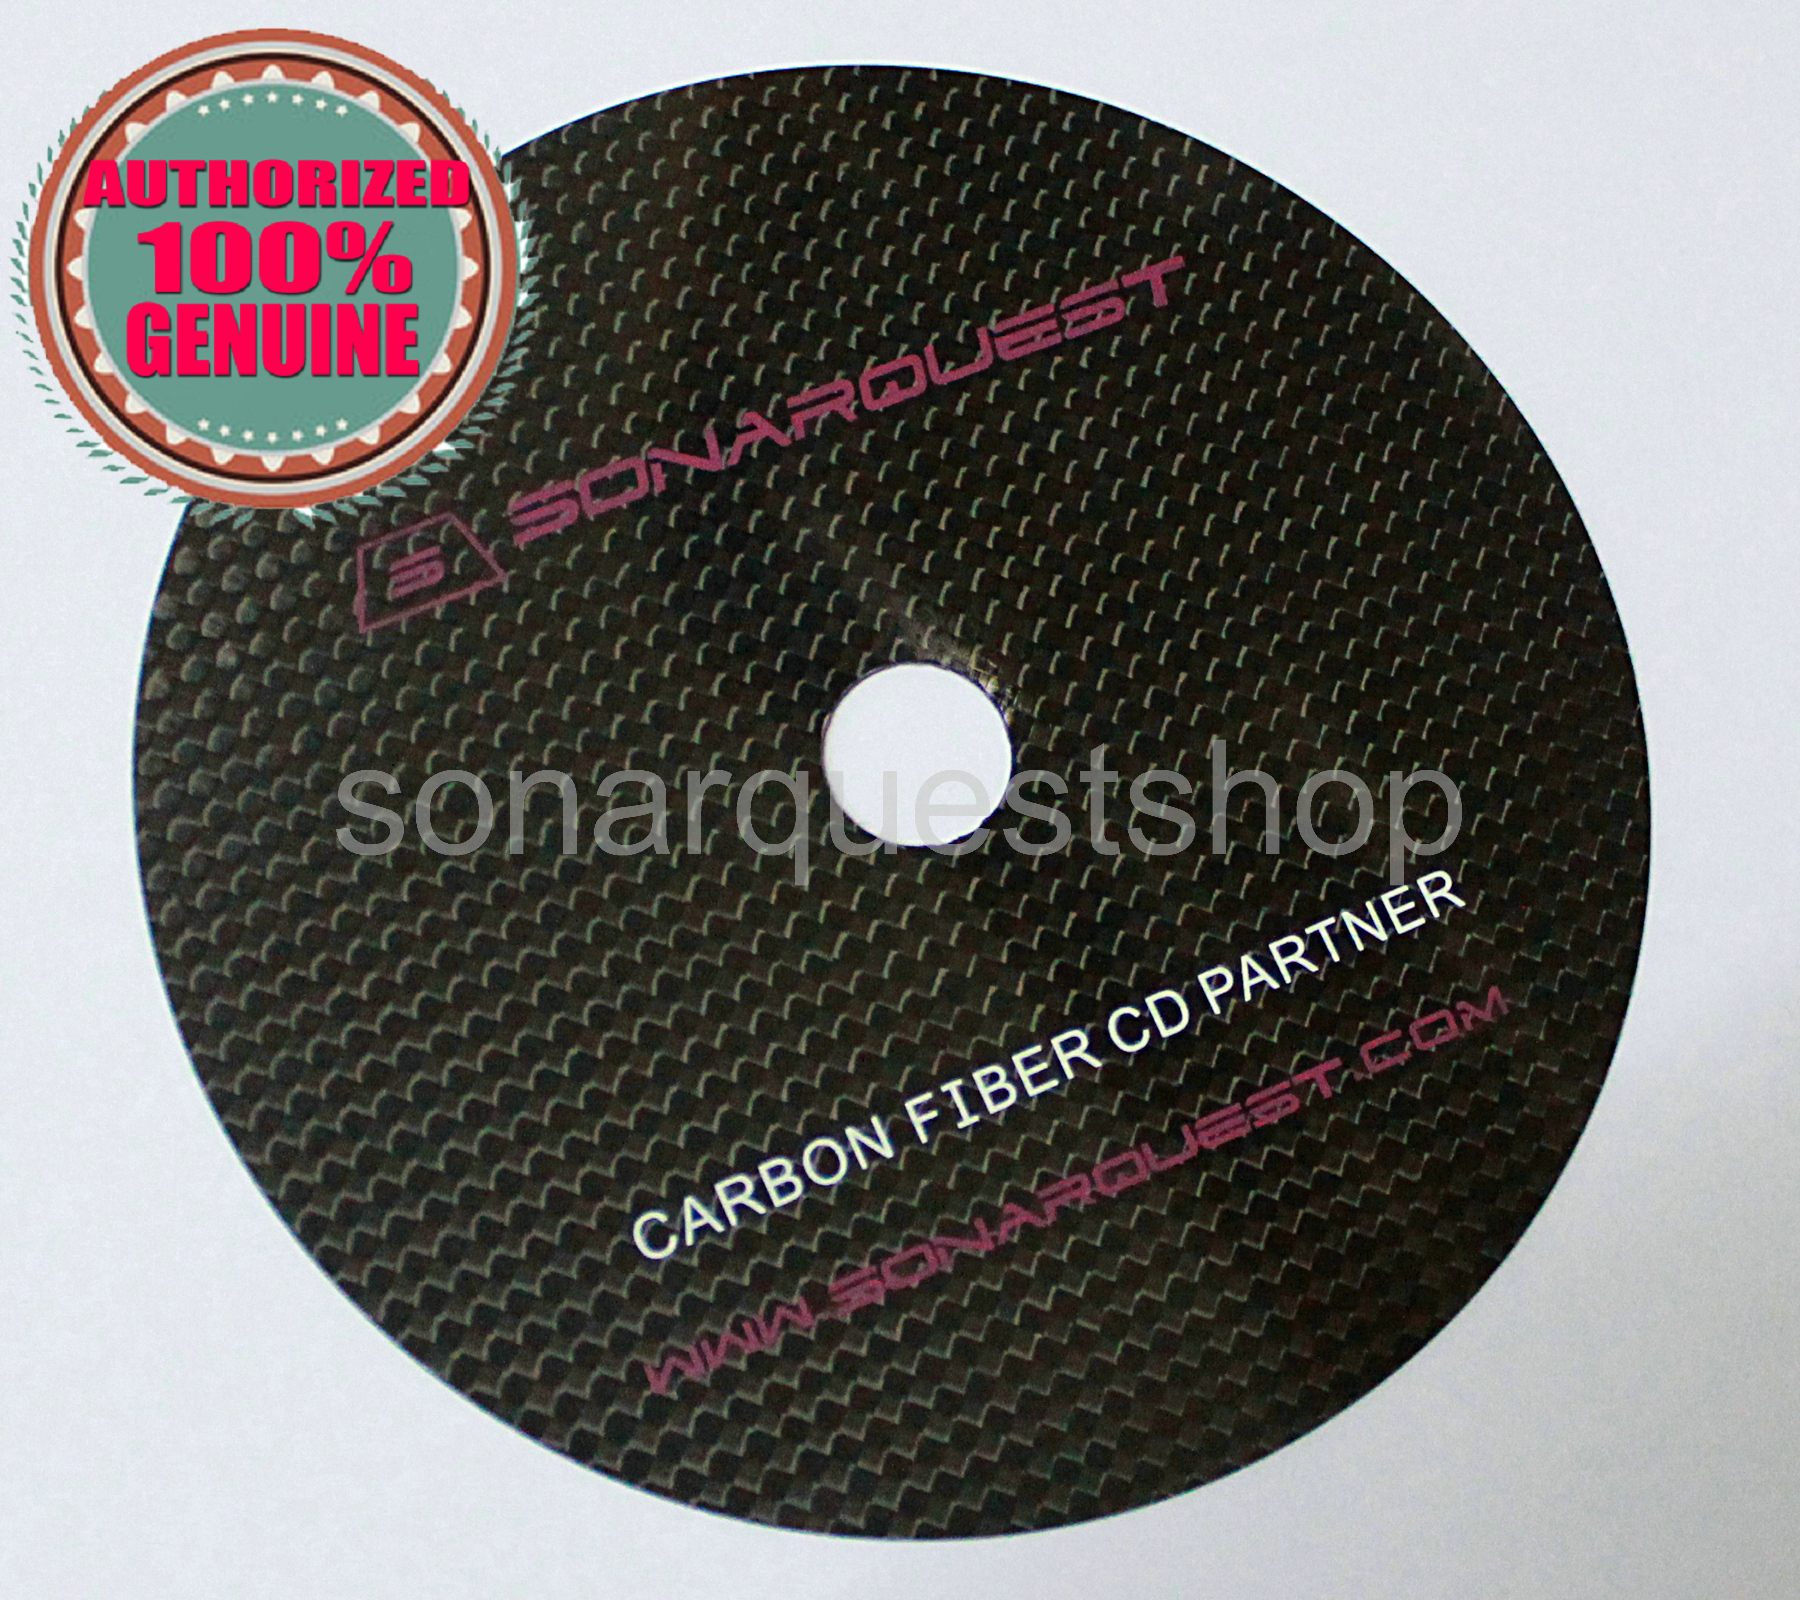 SONARQUEST CD Partner Hi-Fi Tuning Mat CD+ Stabilizer Carbon Fiber HI-END